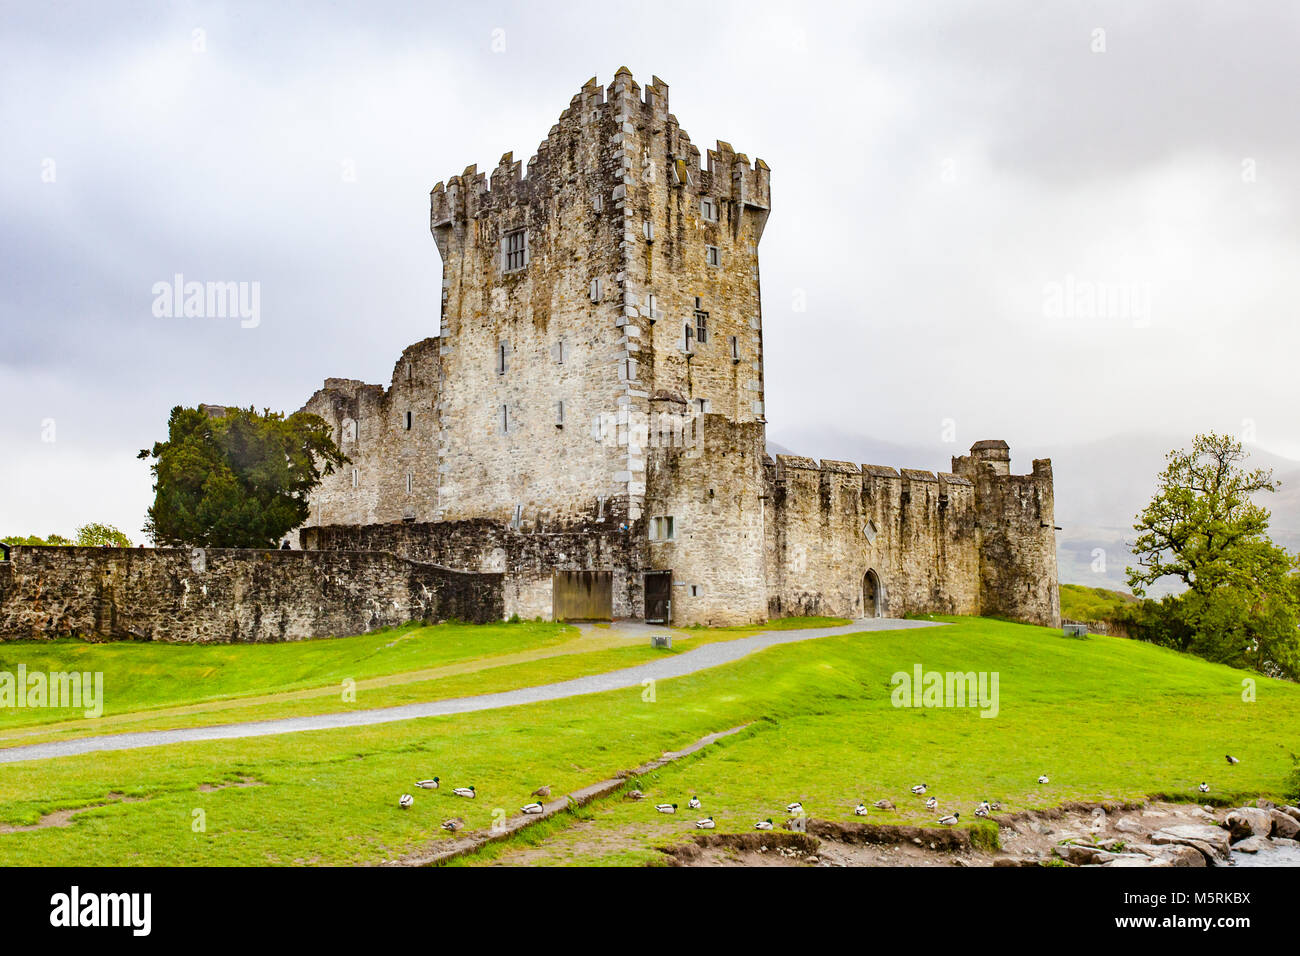 Le Château de Ross historique situé sur le bord de Lough Leane, dans le Parc National de Killarney, comté de Kerry, Irlande Banque D'Images